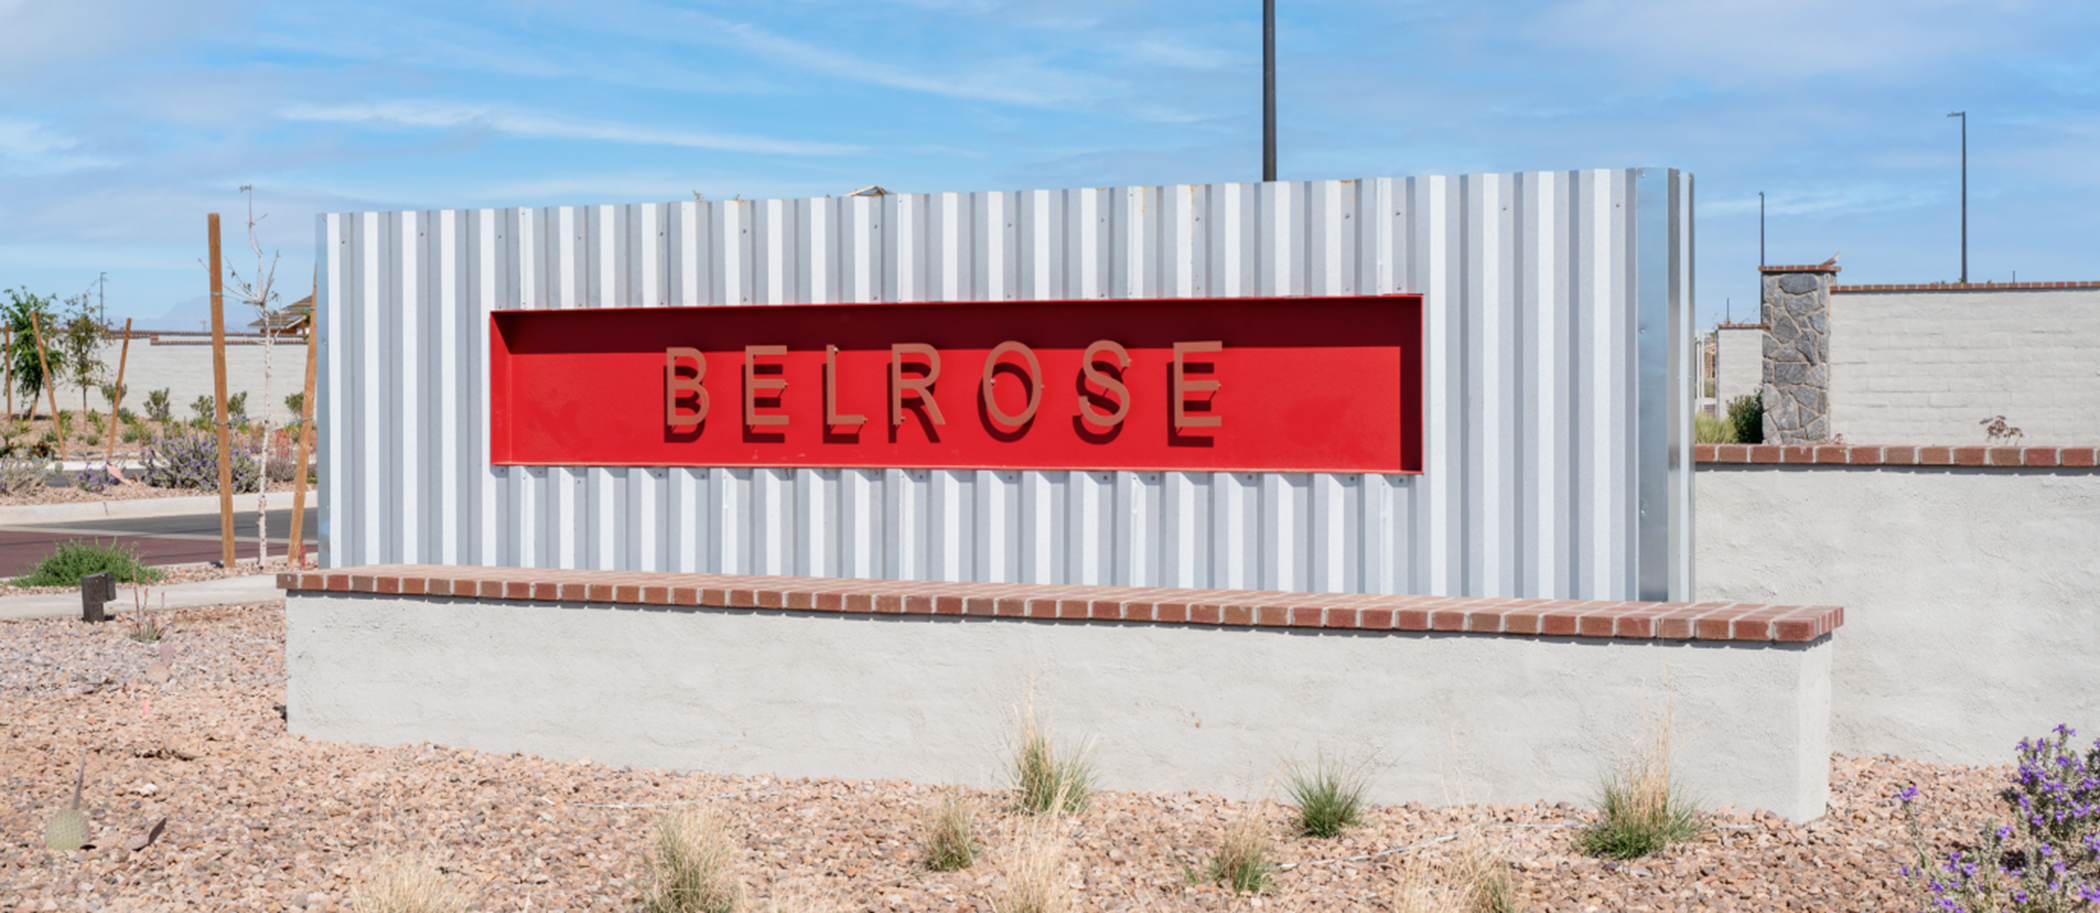 Belrose entry sign